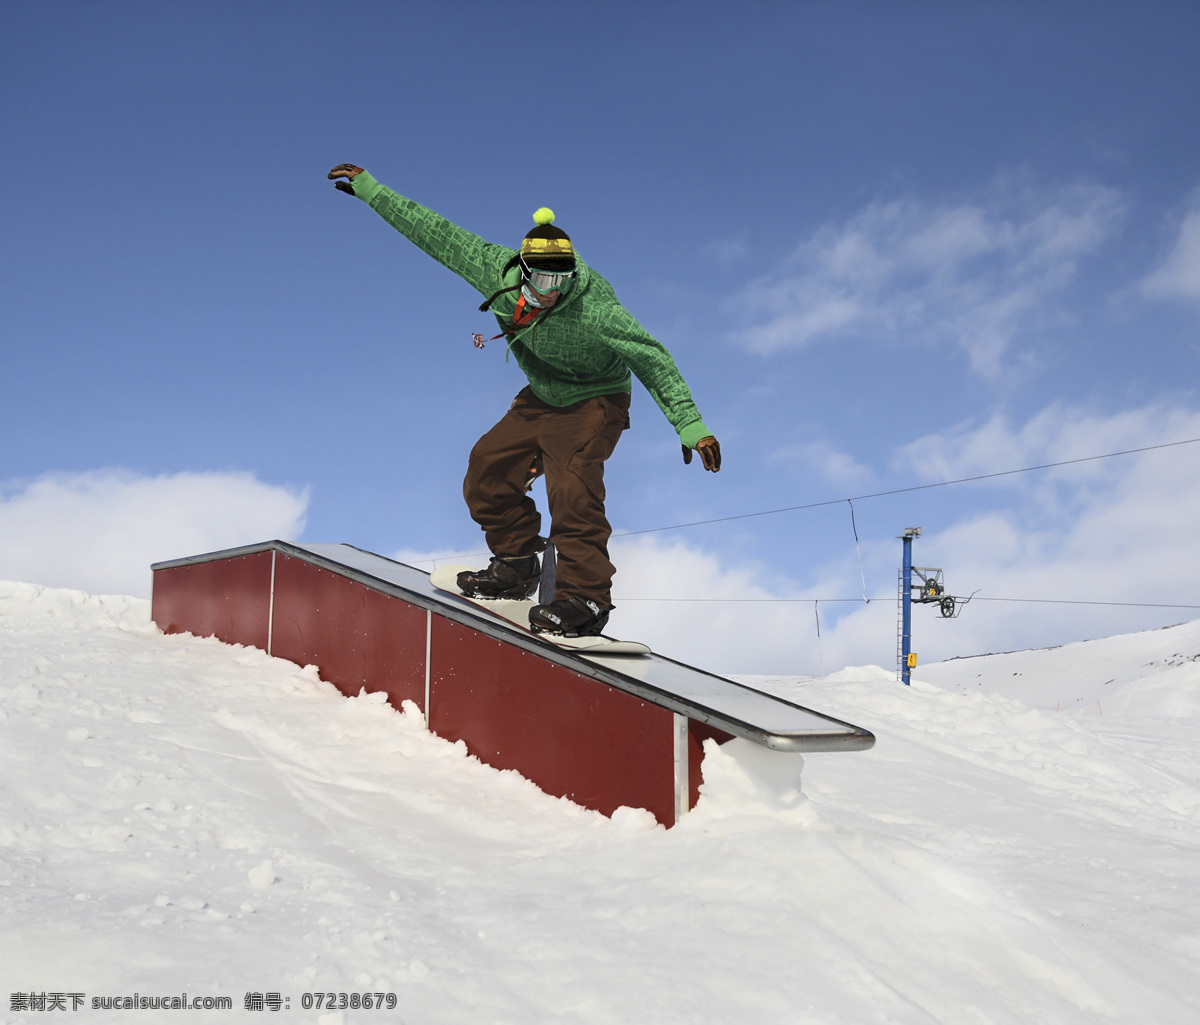 滑雪运动员 滑雪场风景 滑雪公园风景 雪地风景 美丽雪景 体育运动 生活百科 蓝色